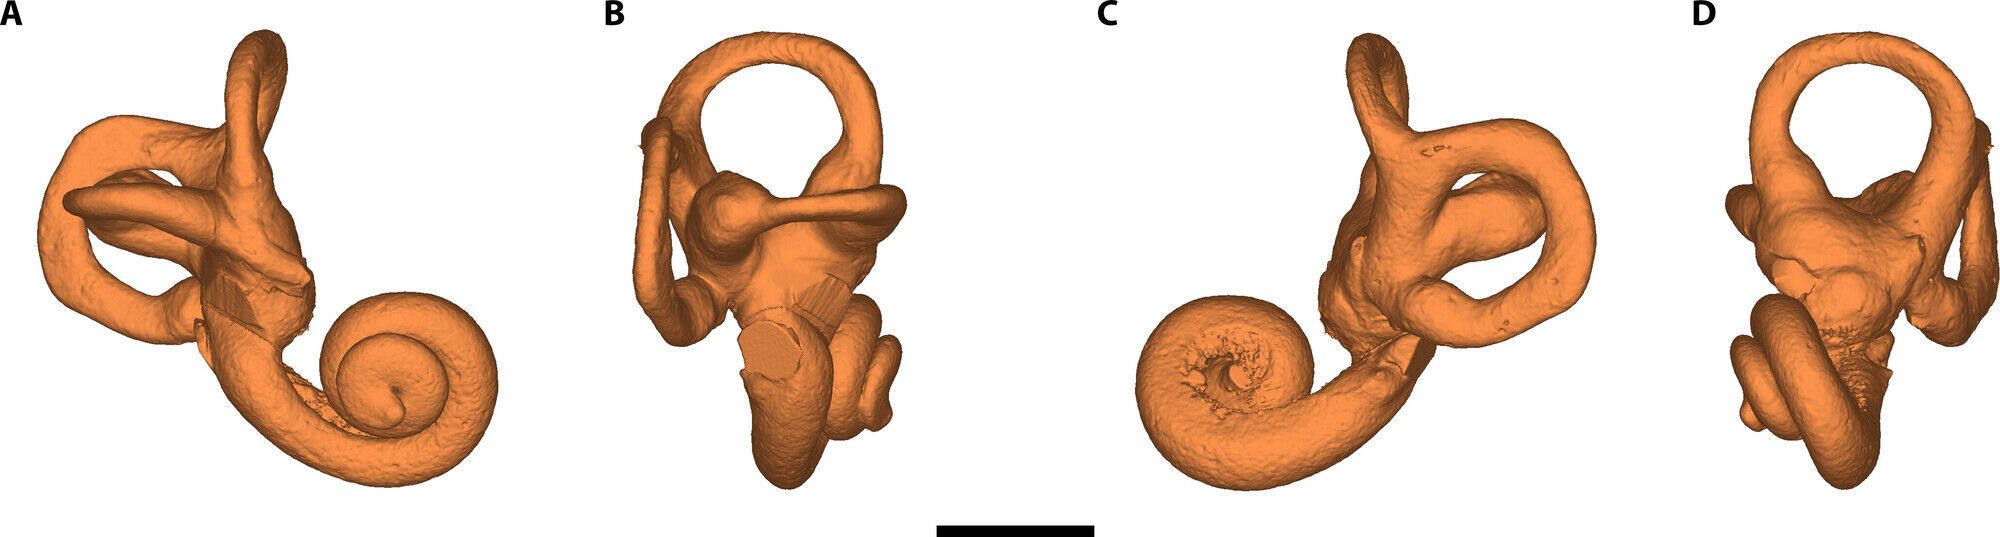 Перший випадок синдрому Дауна серед неандертальців виявлено у шестирічної дитини: вона жила понад 145 000 років тому. Фото